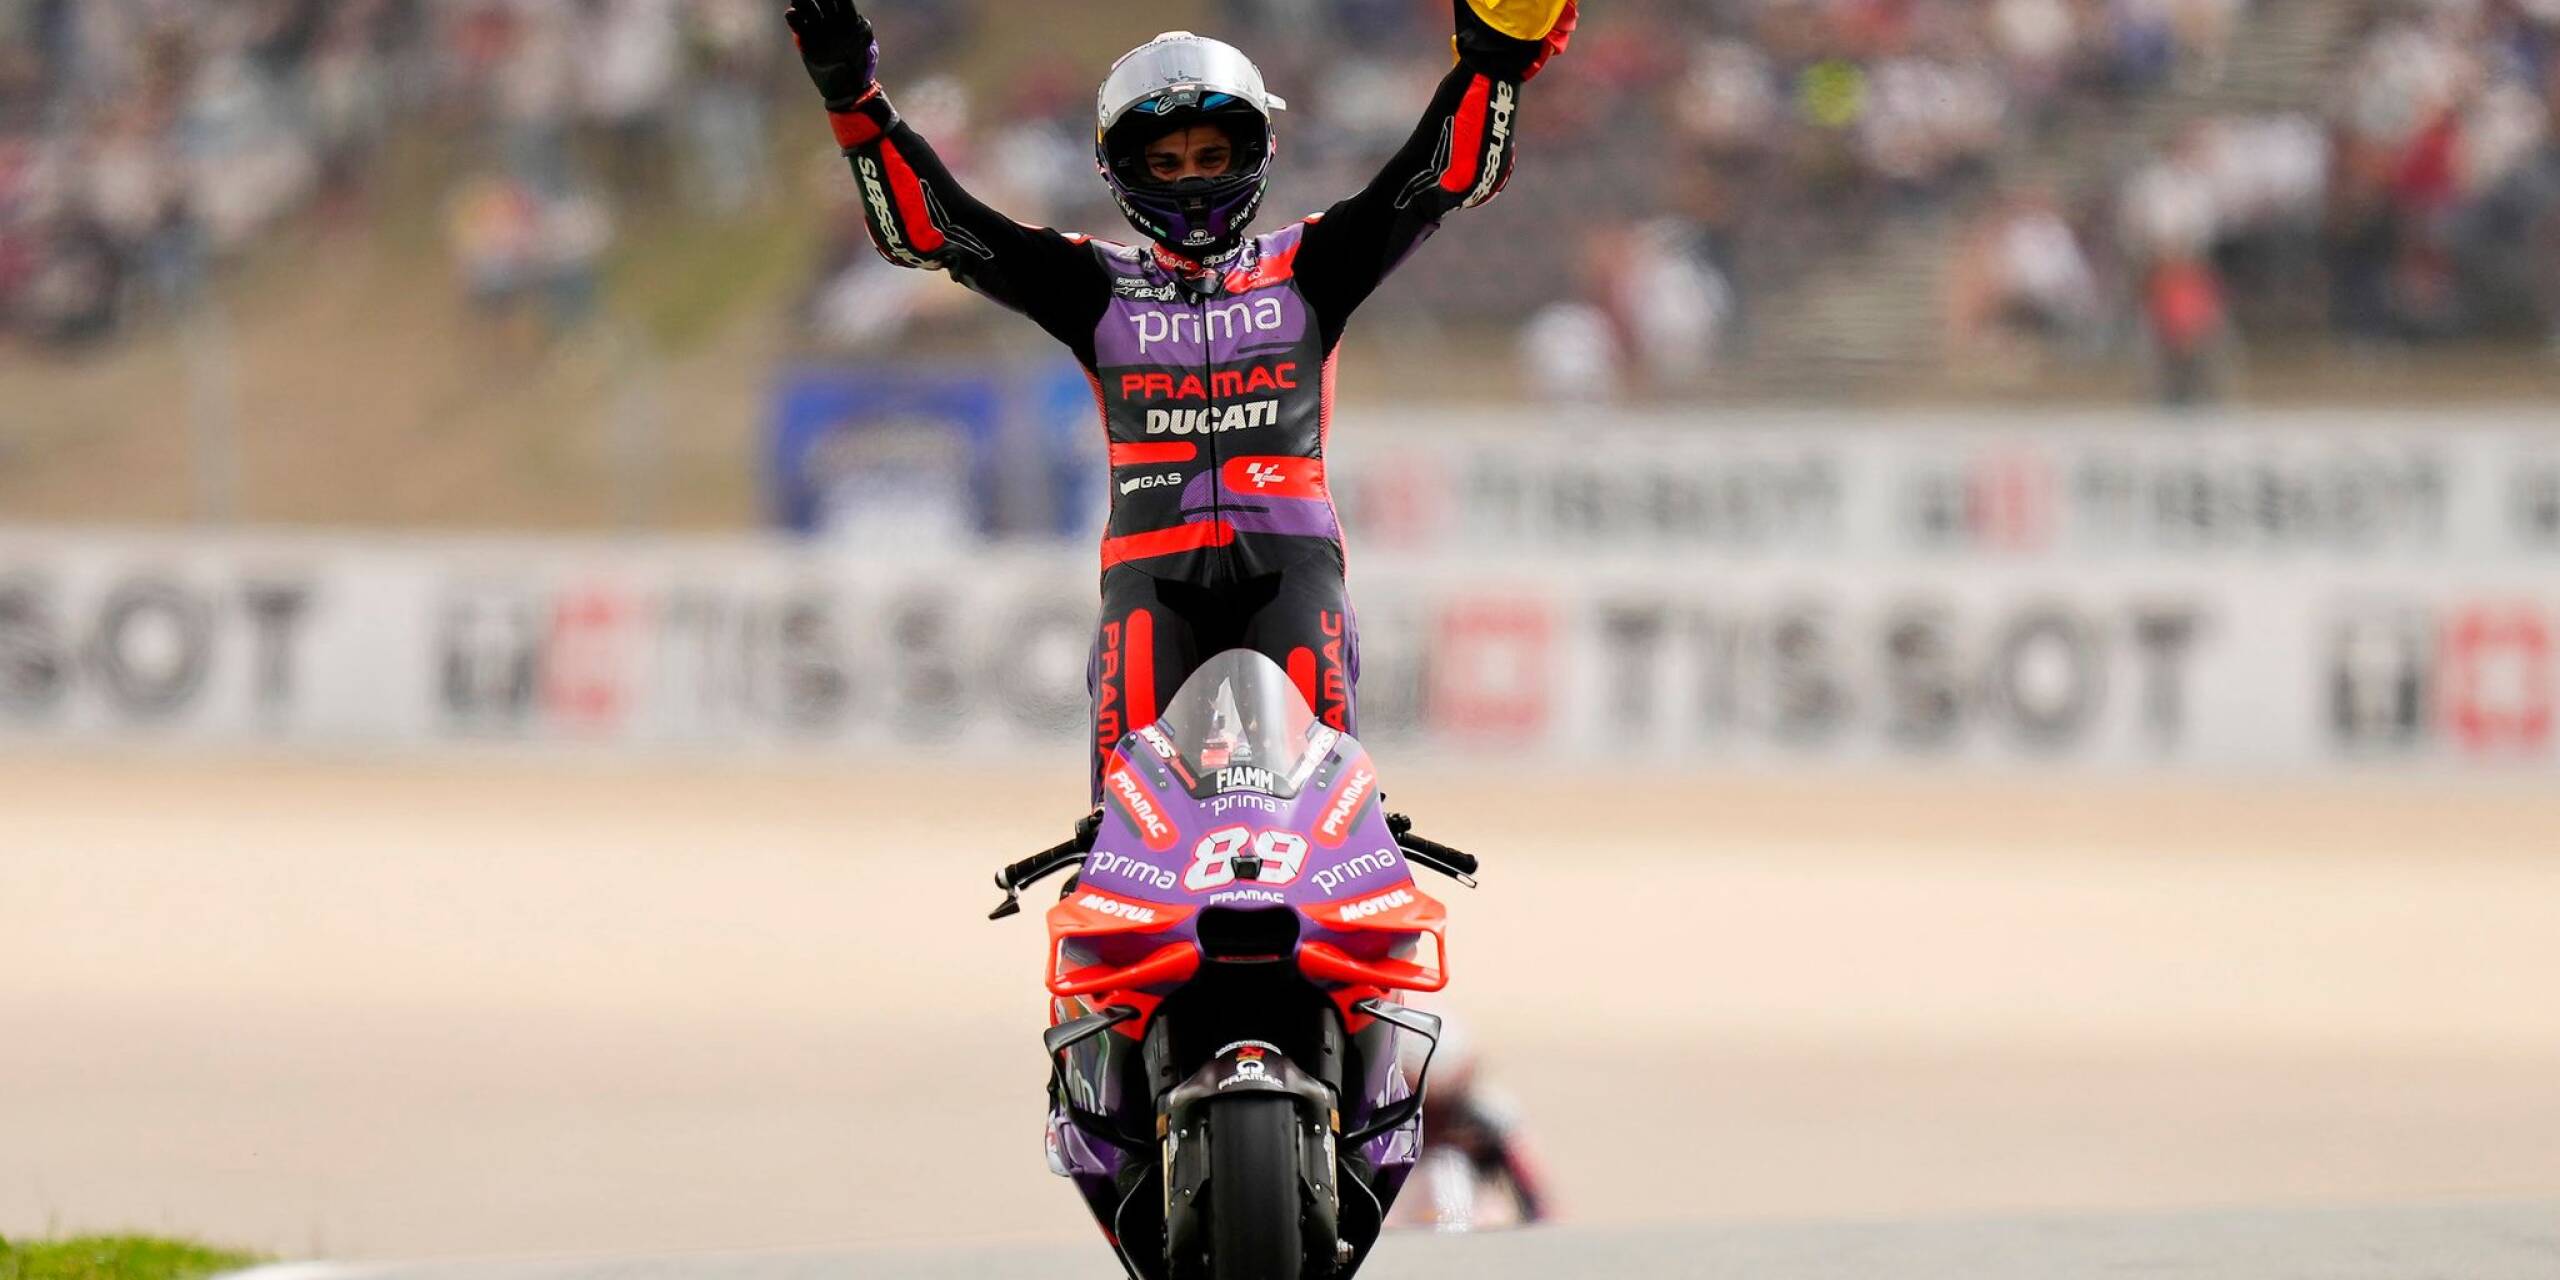 So sieht ein Sieger aus: Der Spanier Jorge Martin jubelt auf seinem Motorrad. Er erreichte als Erster das Ziel des Grand Prix von Portugal.